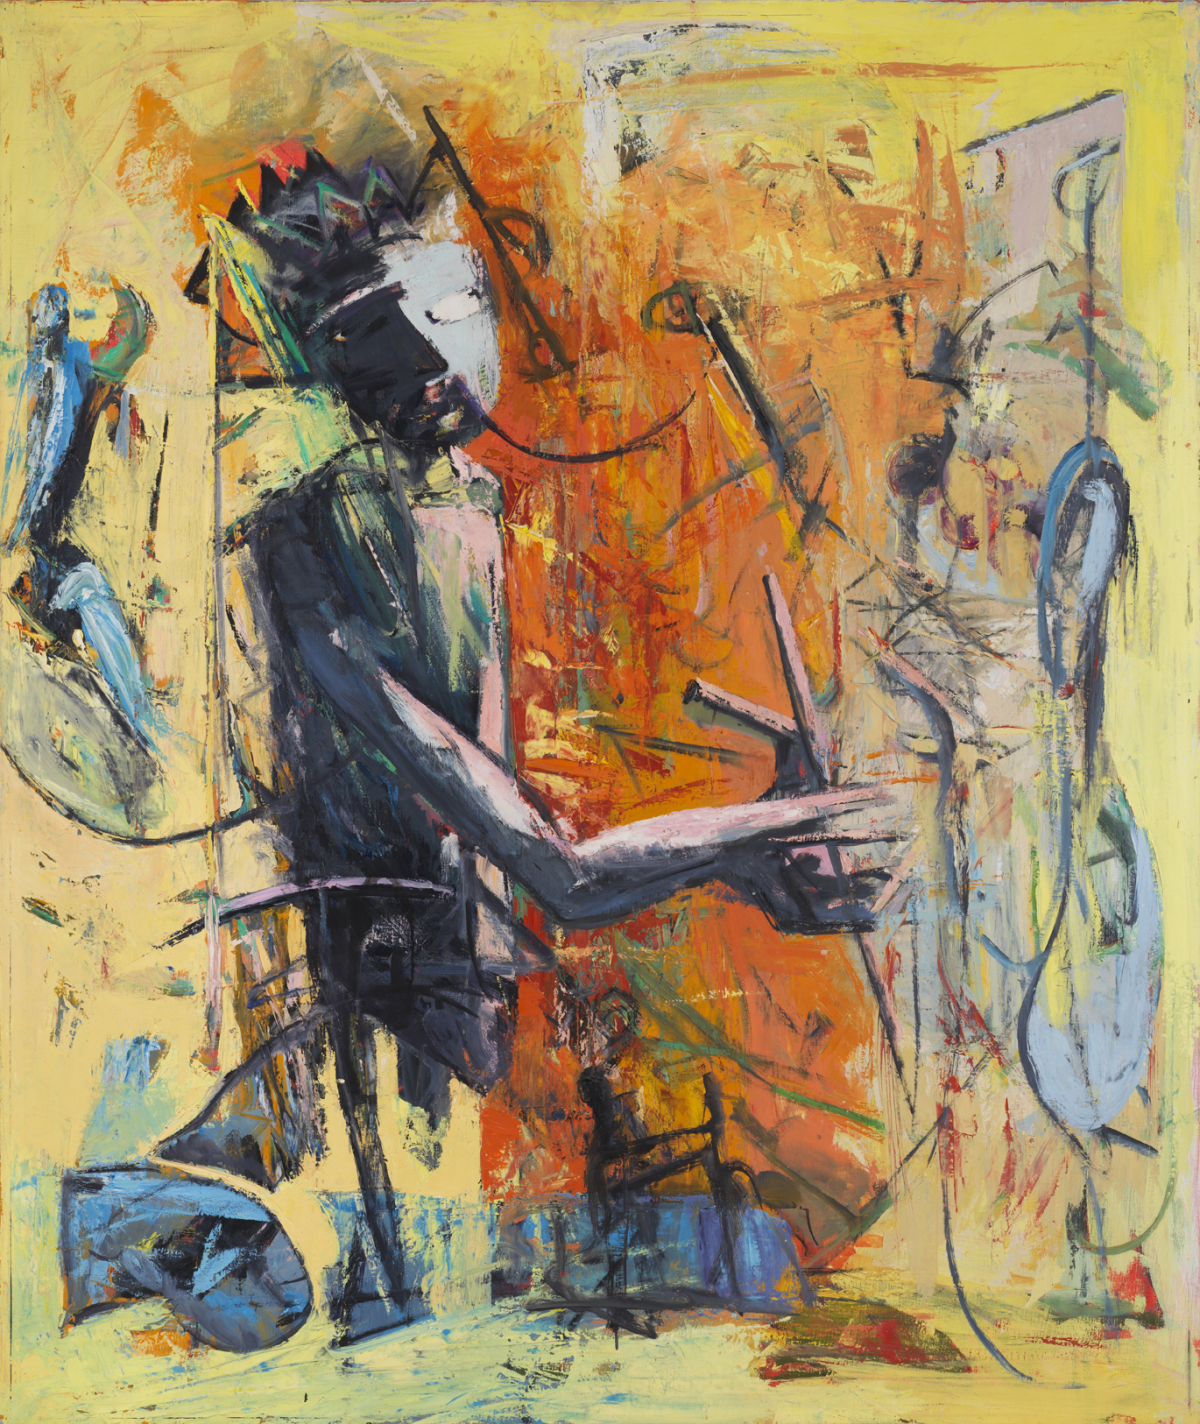 Král Ubu jako mág, 1990, olej na plátně, 195 x 160 cm